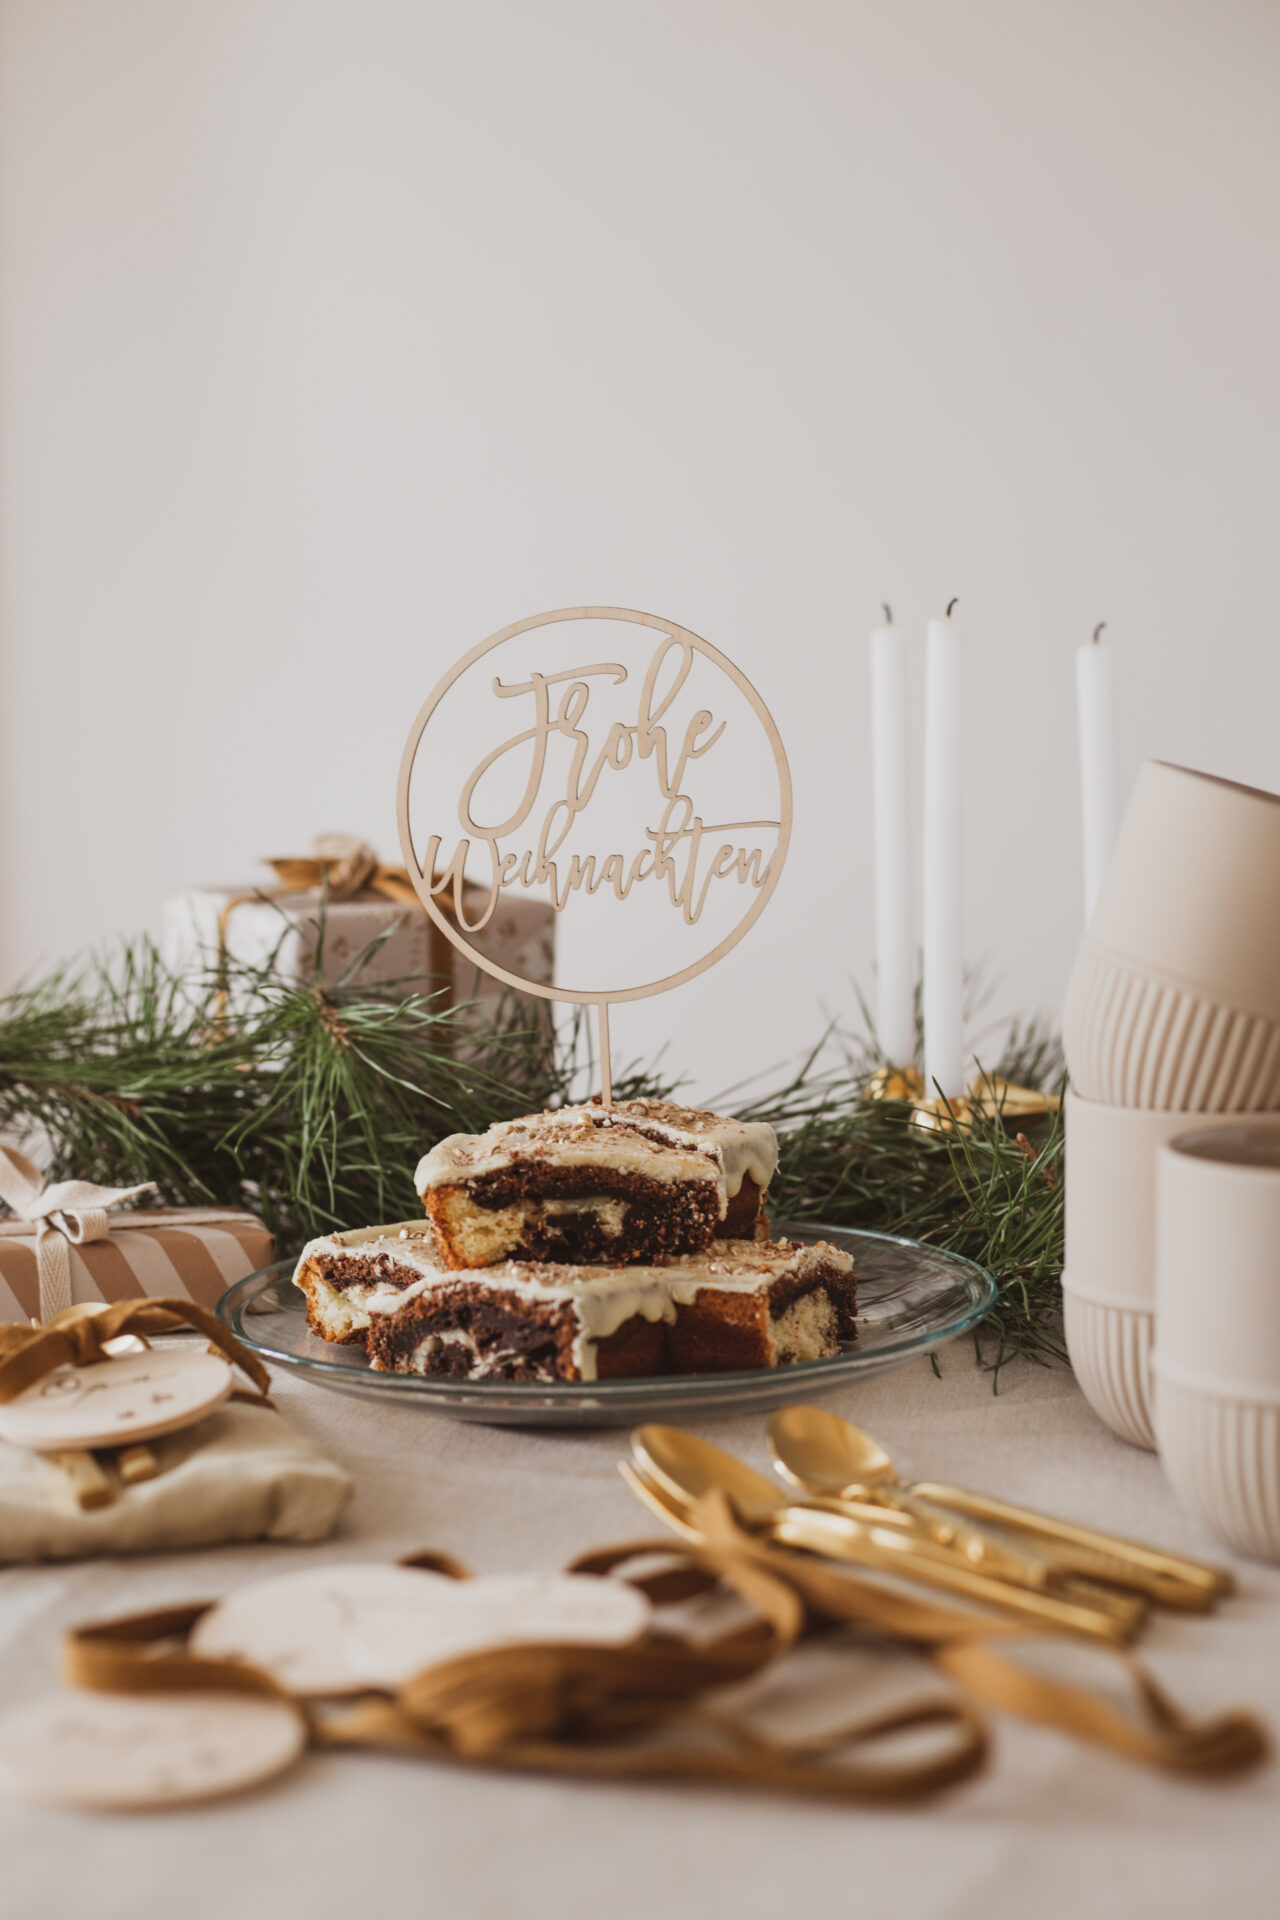 Auf diesem Bild sieht man einen Frohe Weihnachten Cake Topper in einem Kuchenstück.